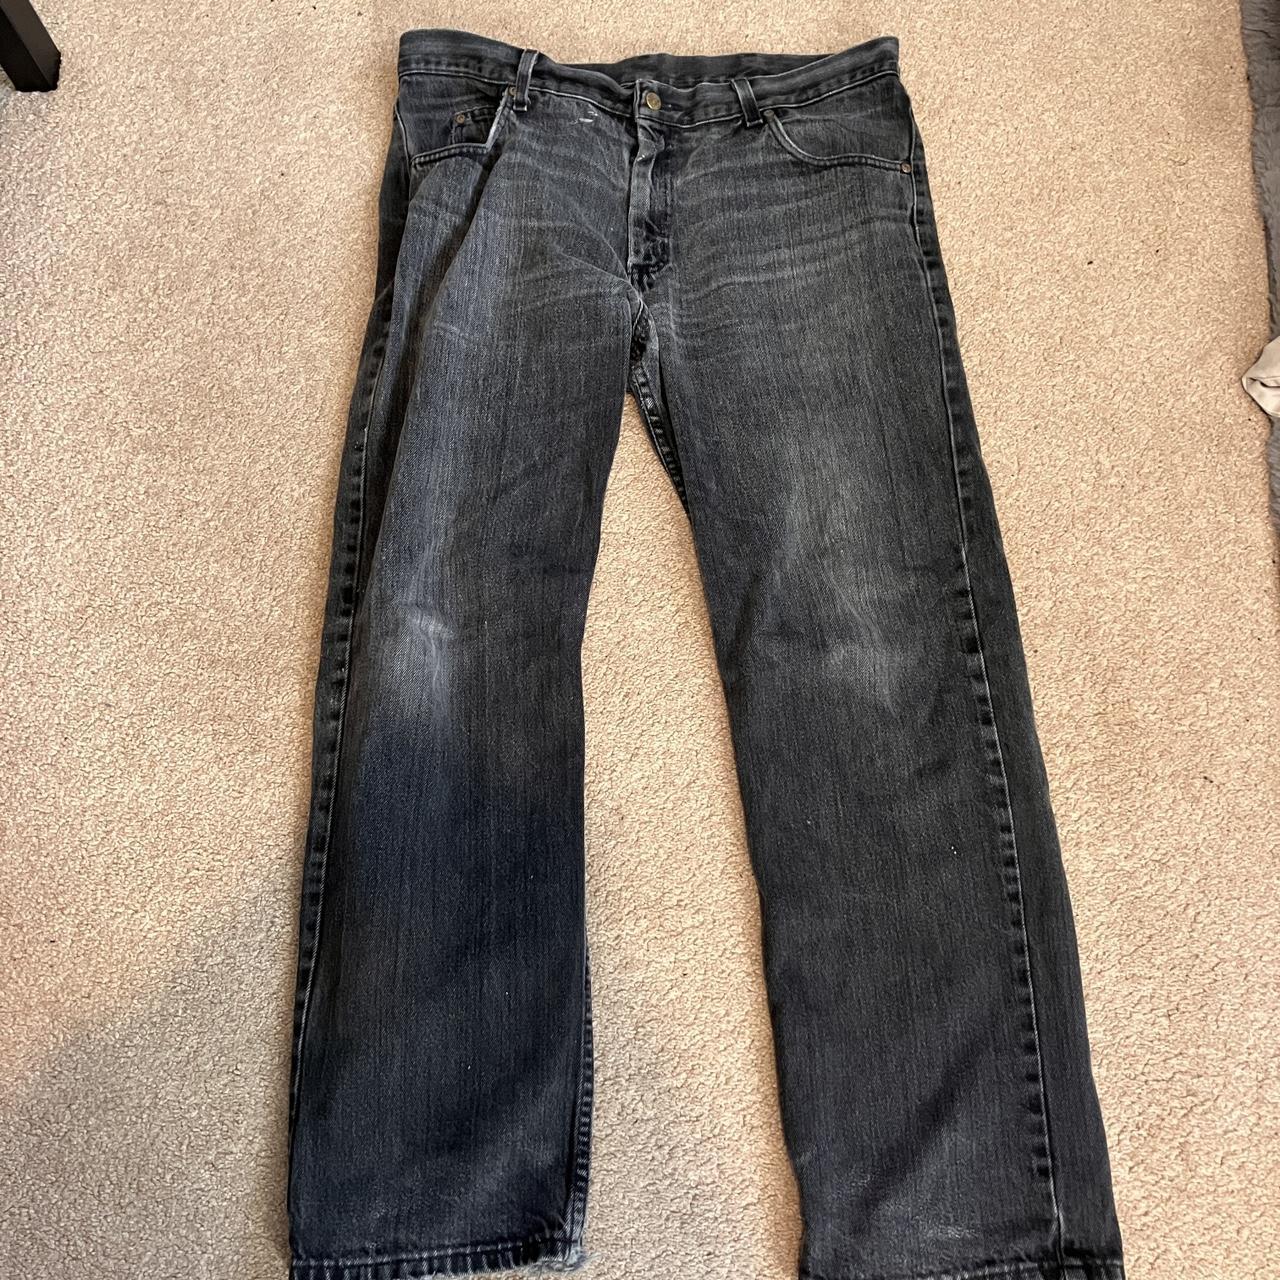 Black distressed jeans 40W 32L Baggy look Colour:... - Depop